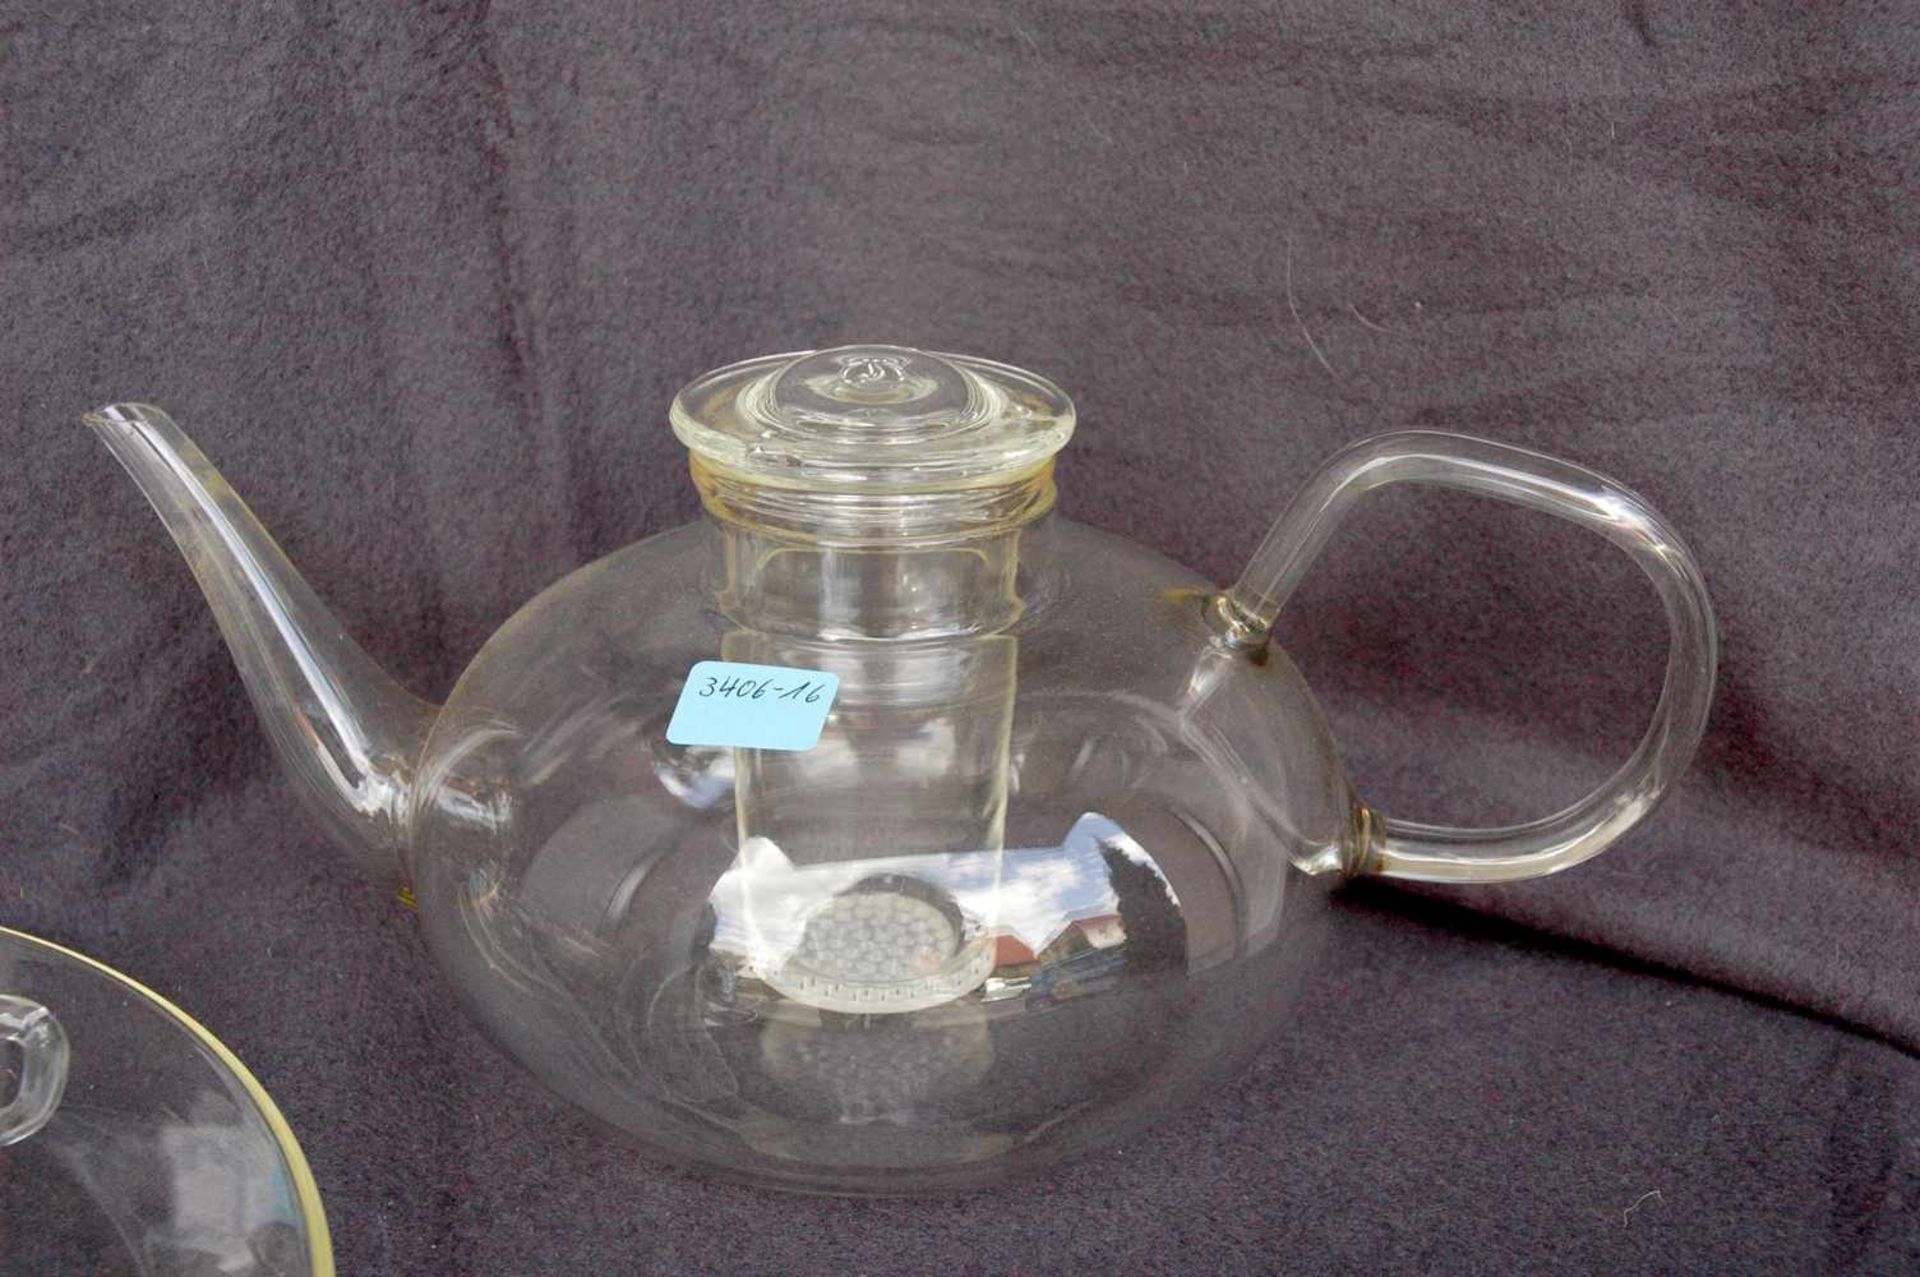 Saale-Glas: Teekanne, 6 Teetassen mit Untertassen, Milchkännchen, Kuchenplatte, 1 Deckel - Bild 2 aus 4